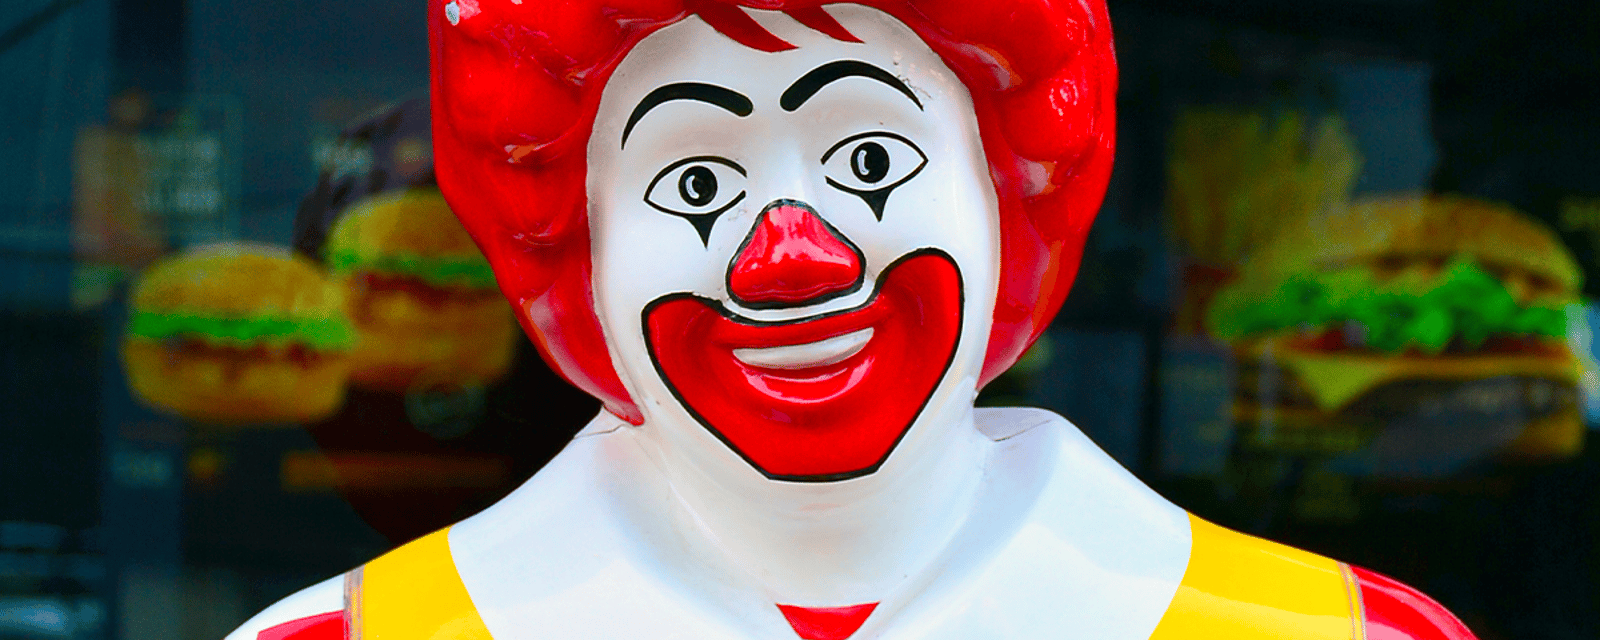 Voici pourquoi on ne voit plus Ronald McDonald chez McDonald’s